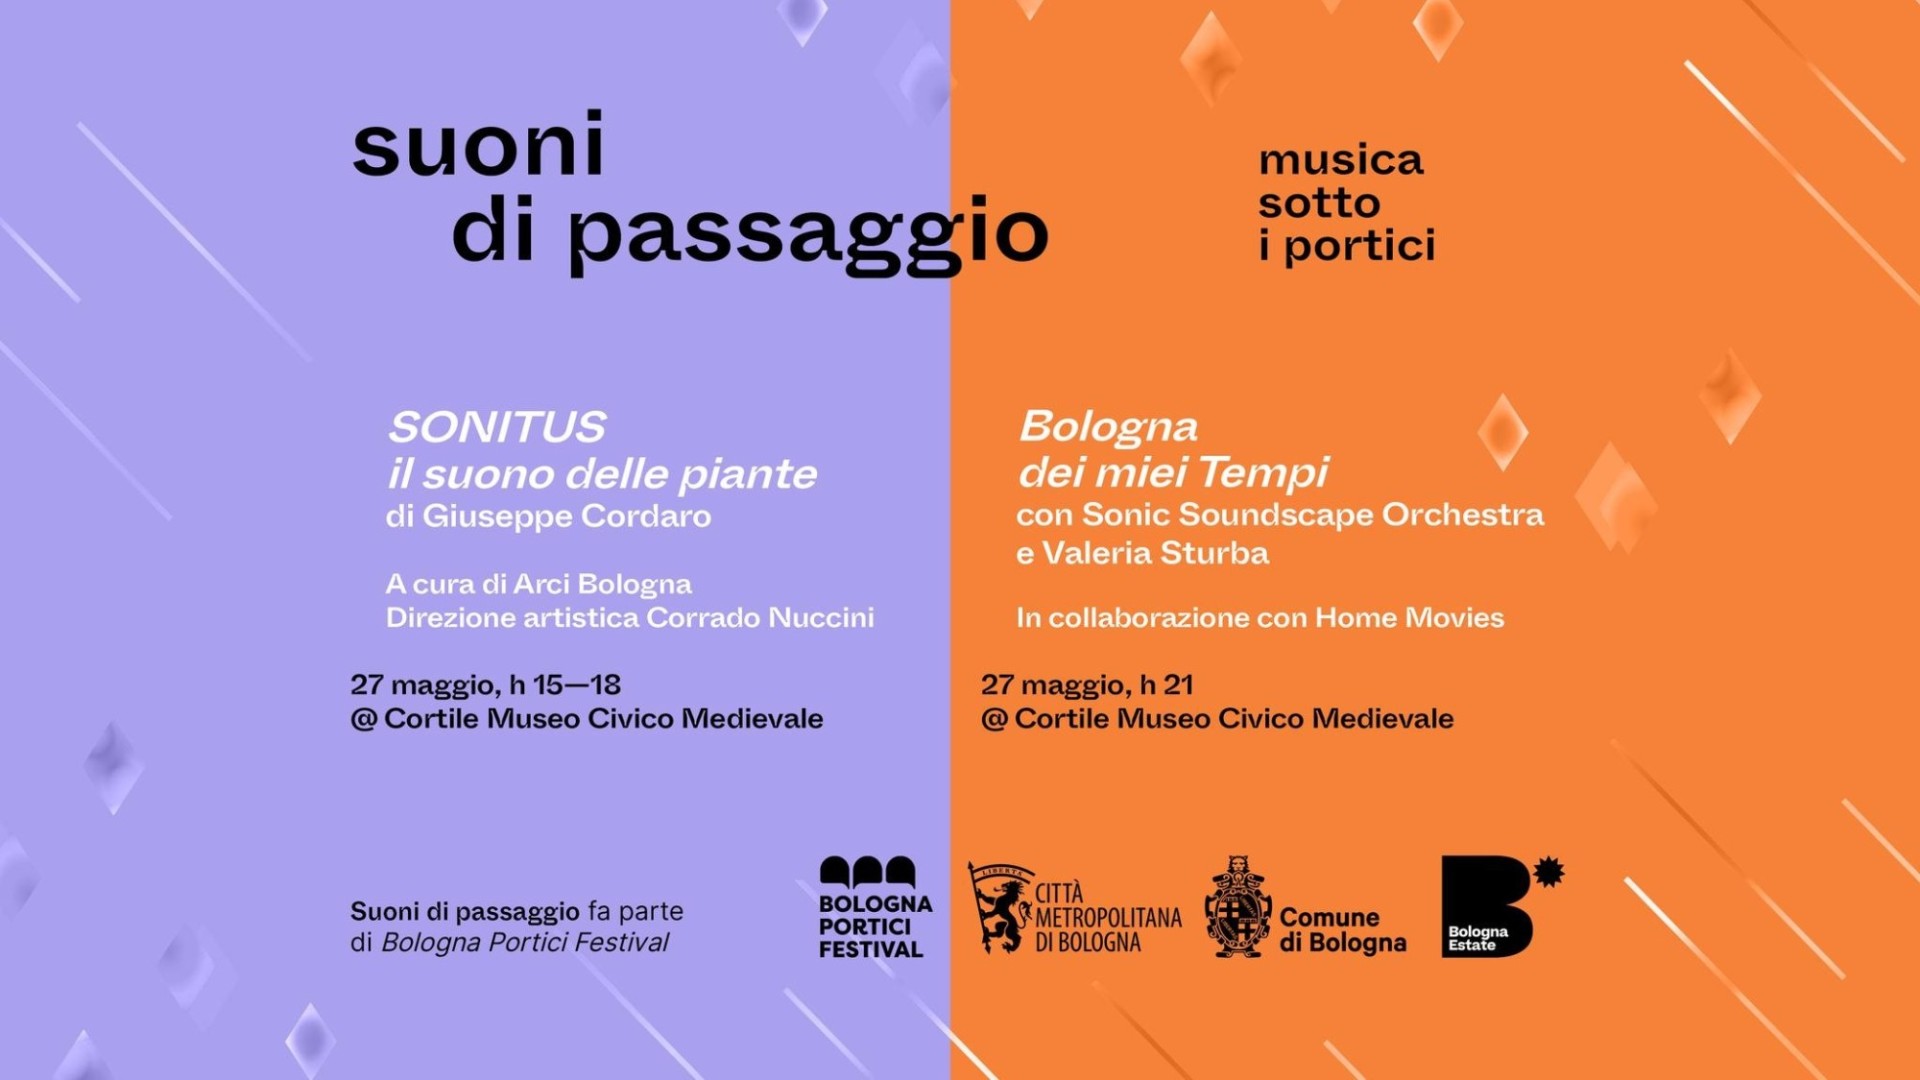 Suoni di Passaggio presenta: Sonitus + Bologna dei miei tempi